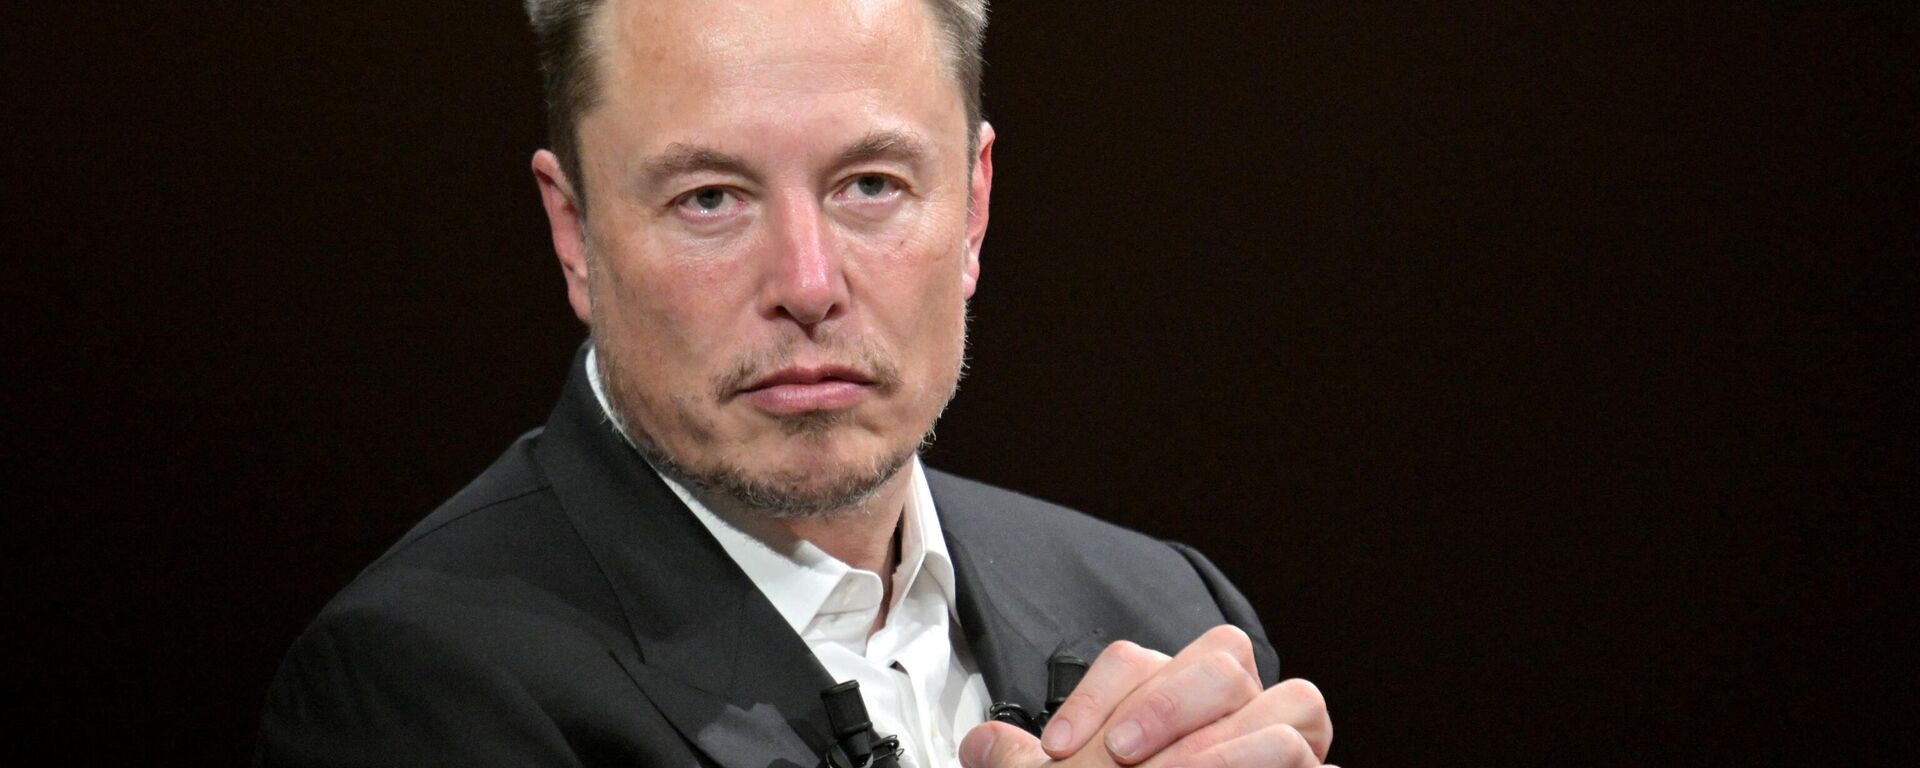 Elon Musk, CEO da SpaceX, X (anteriormente conhecida como Twitter) e da Tesla, fala durante Fvisita à feira de inovação e startups de tecnologia Vivatech no centro de exposições Porte de Versailles, Paris, França, 16 de junho de 2023 - Sputnik Brasil, 1920, 28.10.2023